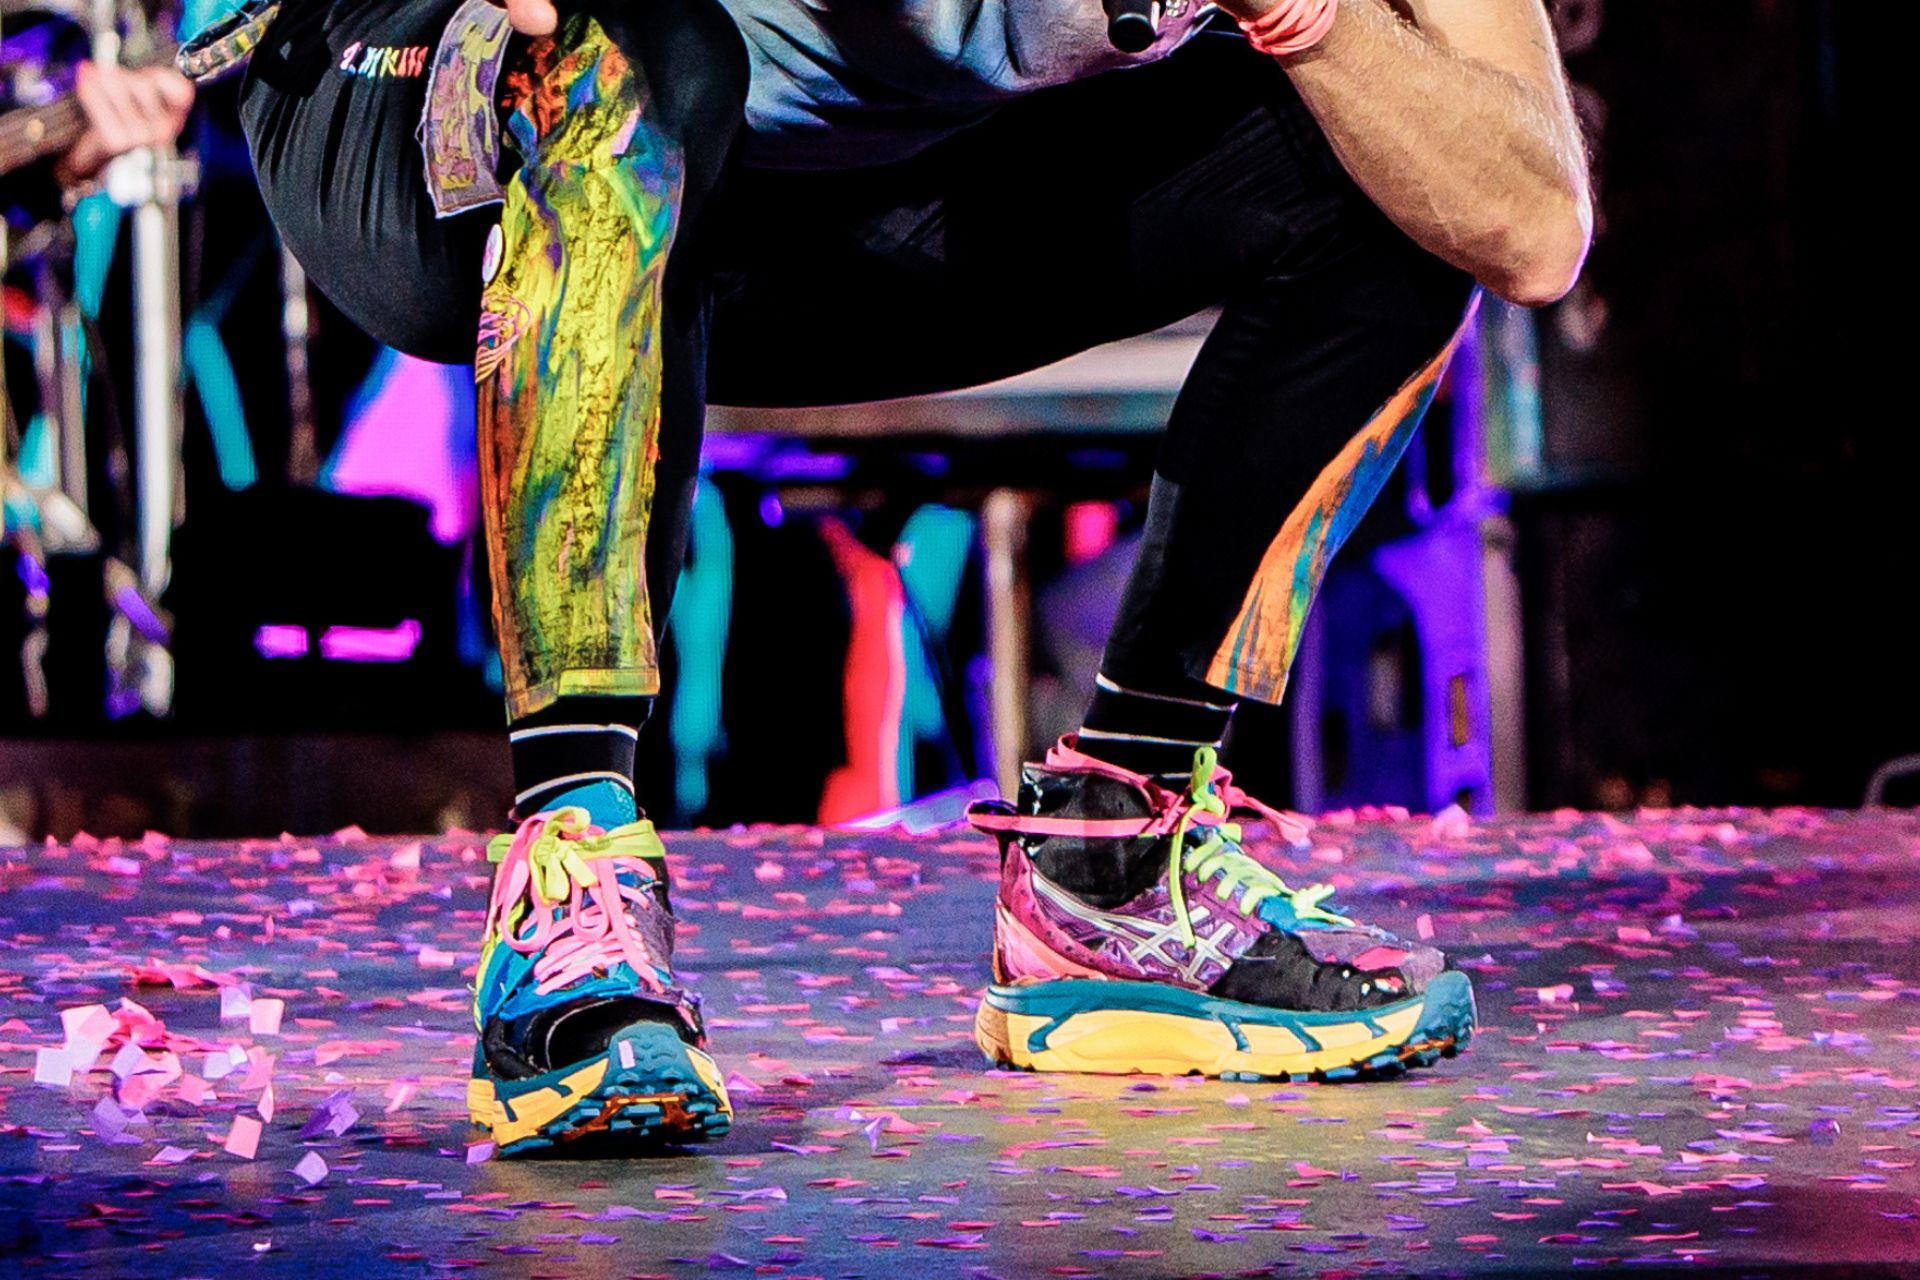 Chris Martin's famous shoes